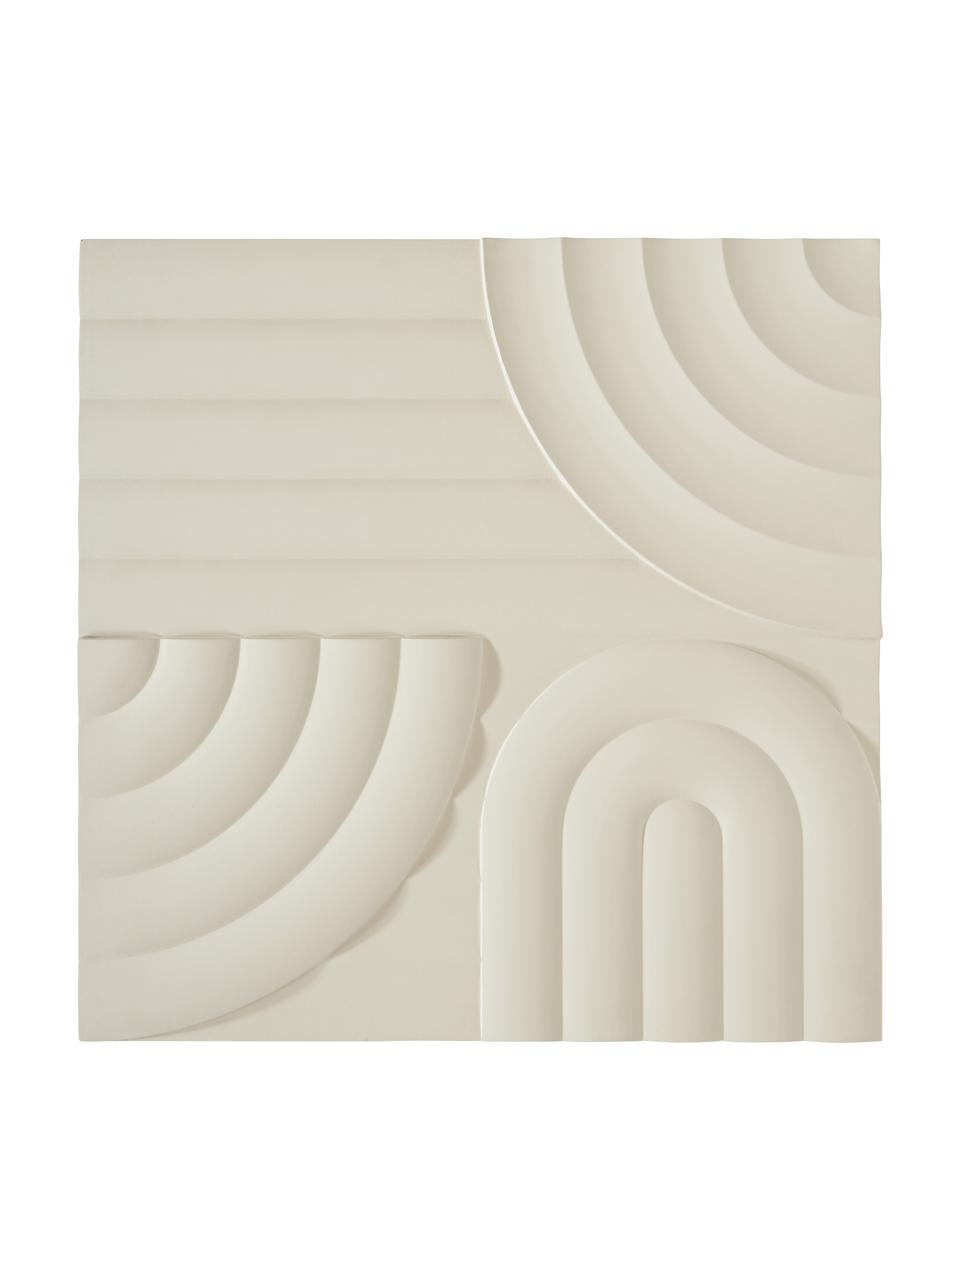 Nástěnná dekorace Massimo, MDF deska (dřevovláknitá deska střední hustoty), Béžová, Š 80 cm, V 80 cm